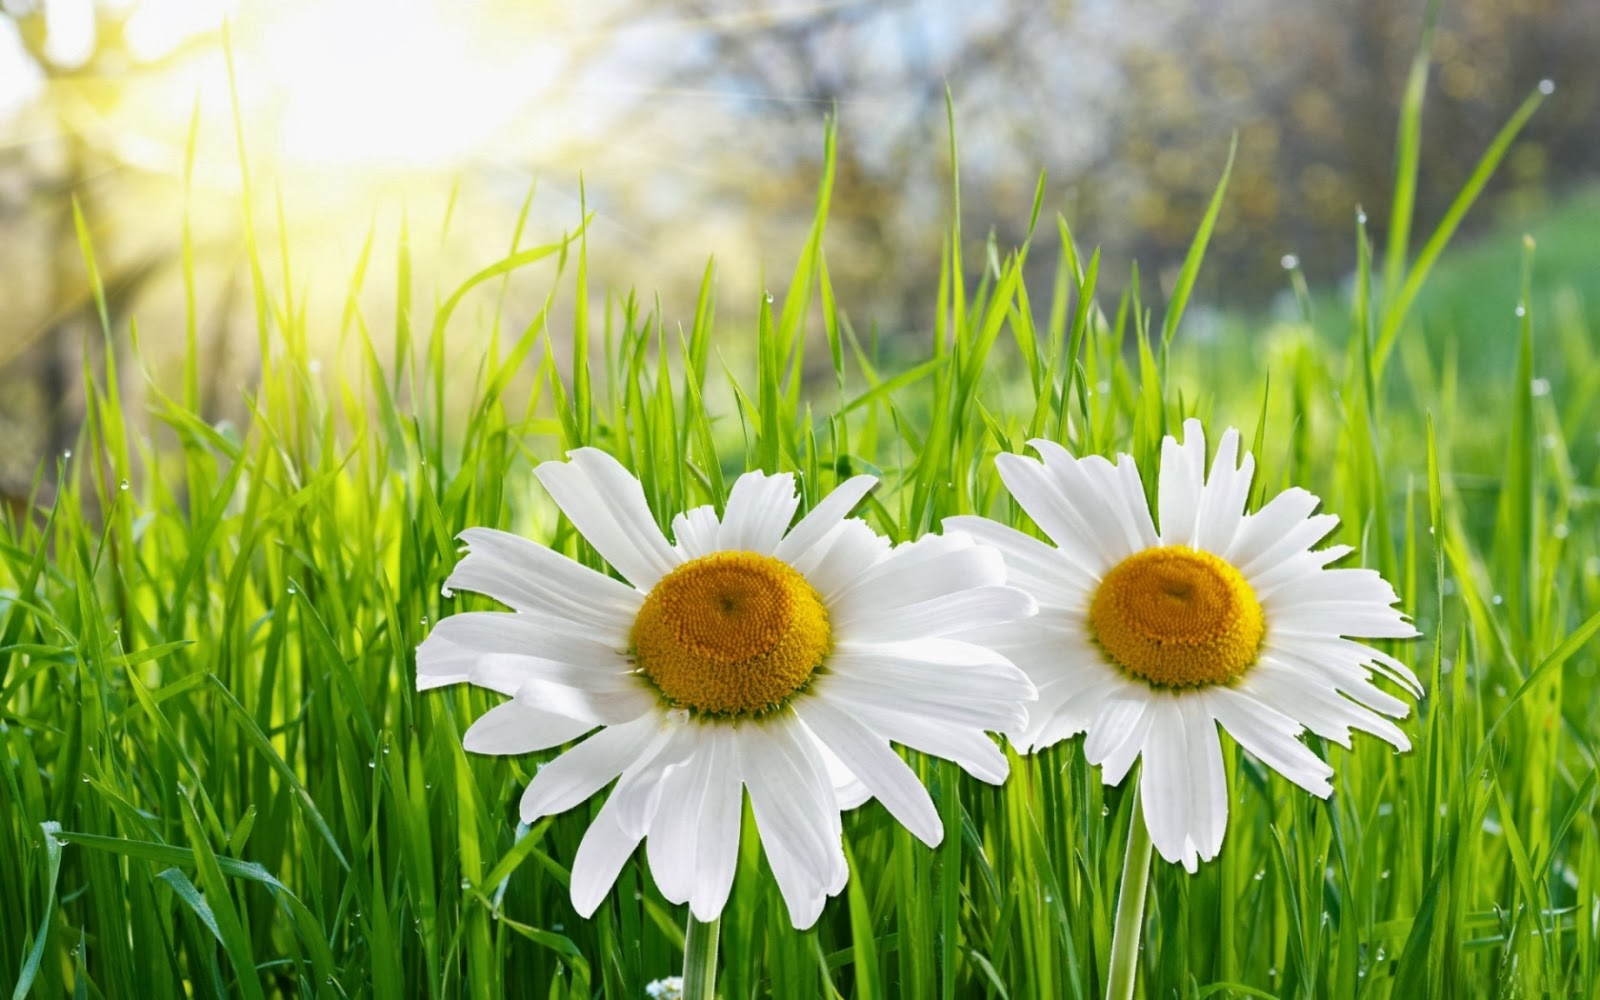 Best Atumn Daisy Flower Desktop Wallpaper Photos Free Download